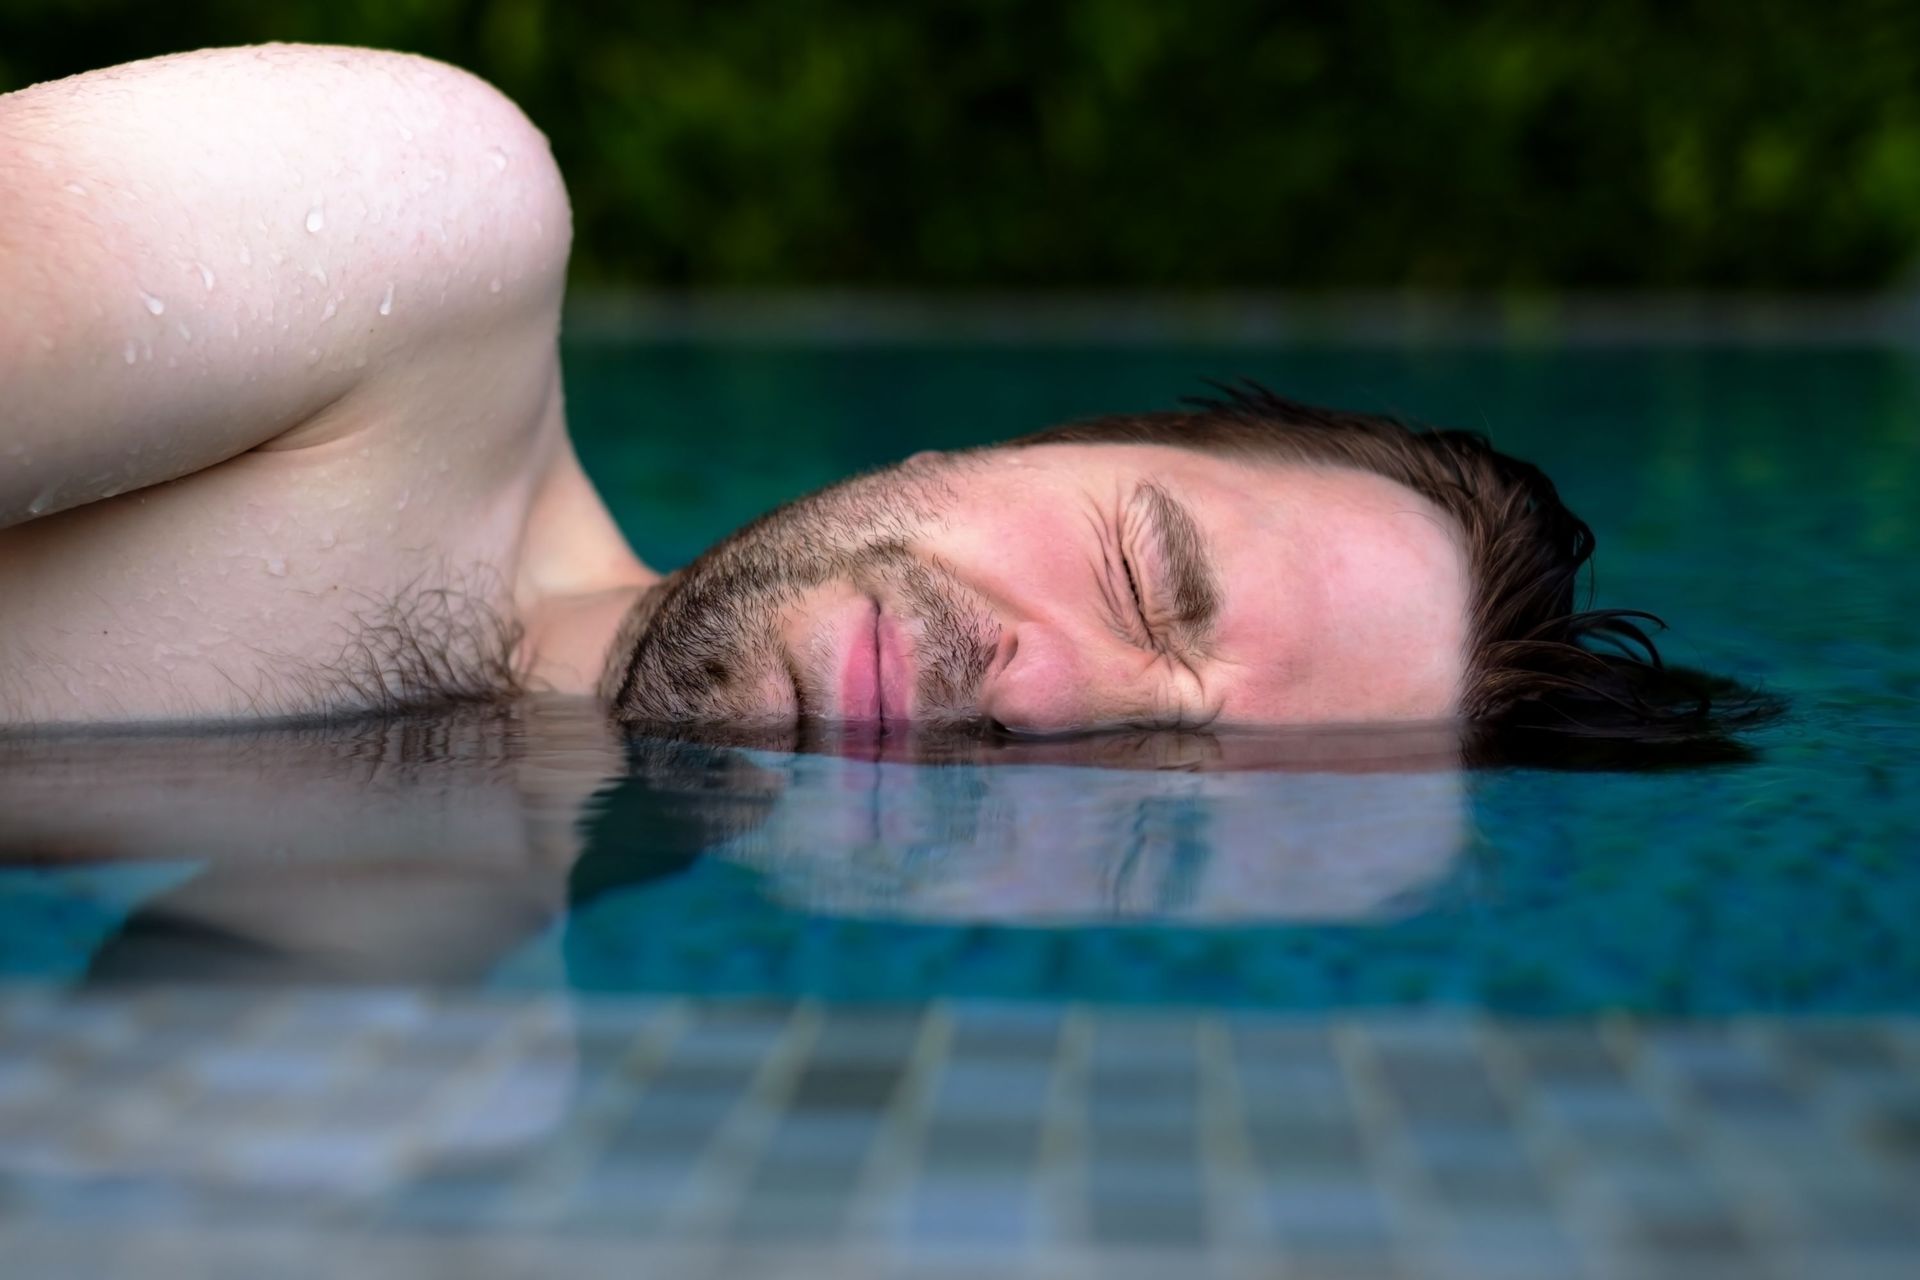 Allergie au chlore ou sel à la piscine : comment éviter les irritations ?